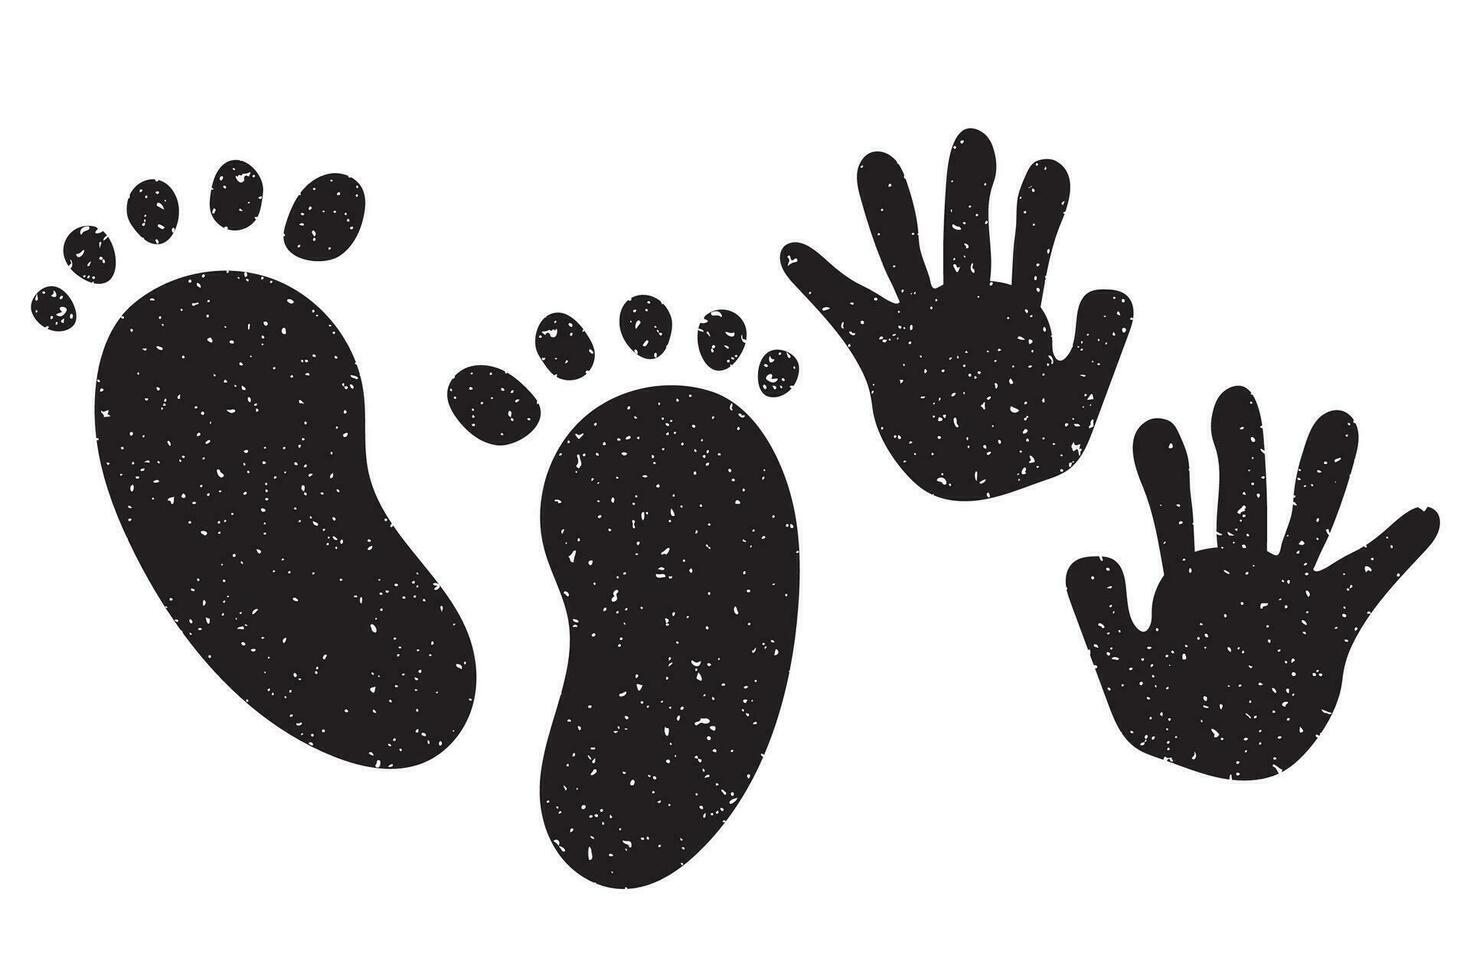 inkt kinderen voetafdrukken van handen en voeten. eerste jaar van leven vector